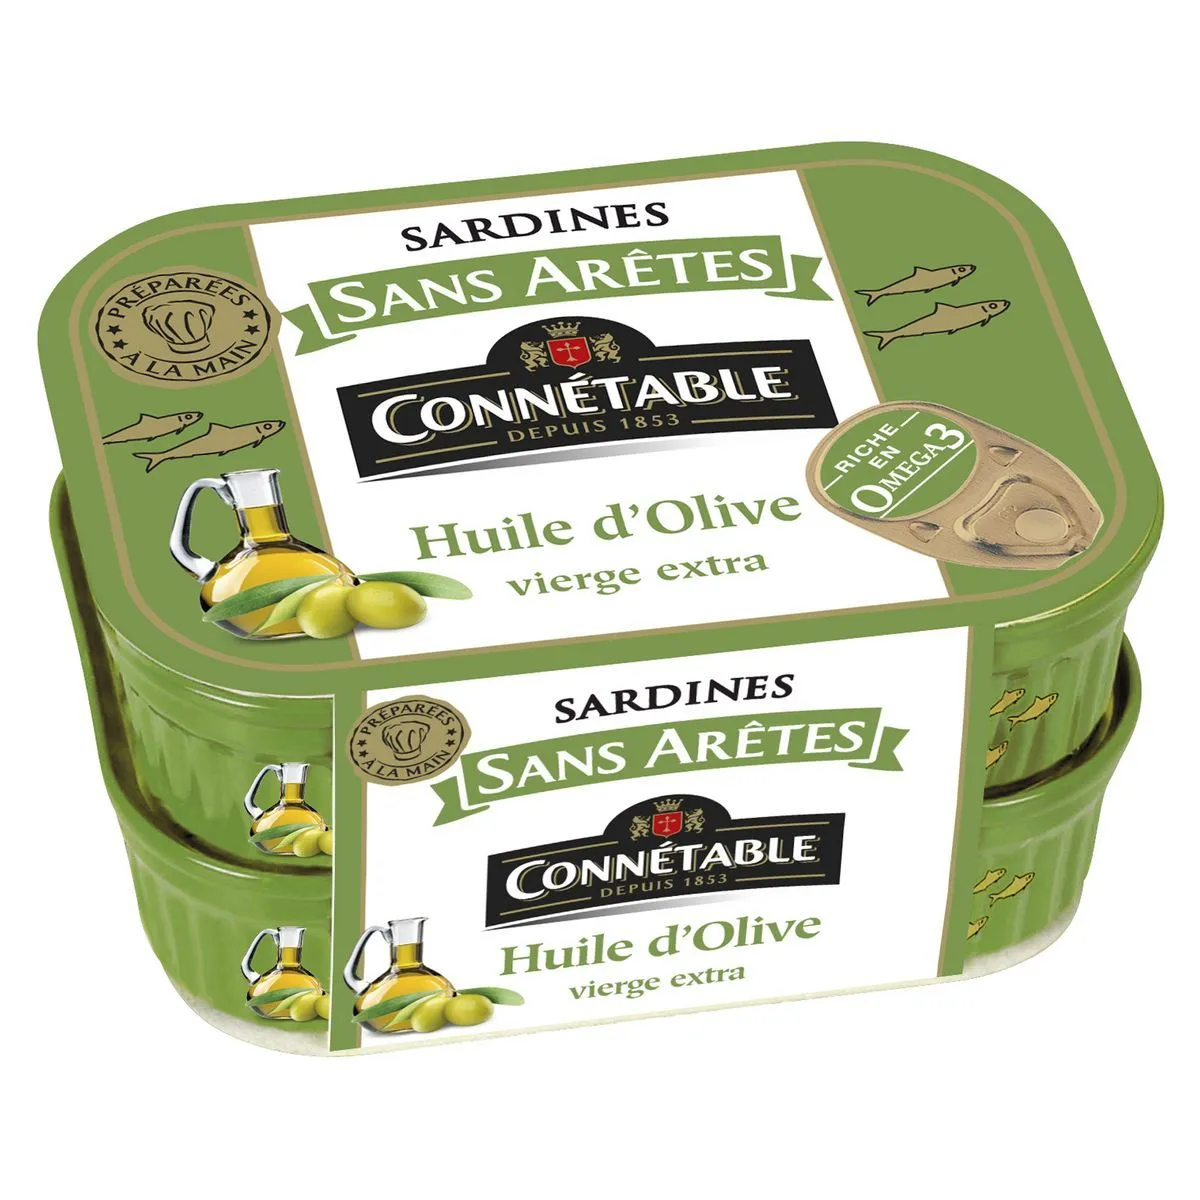 sardines sans aretes a l'huile d'olive connetable